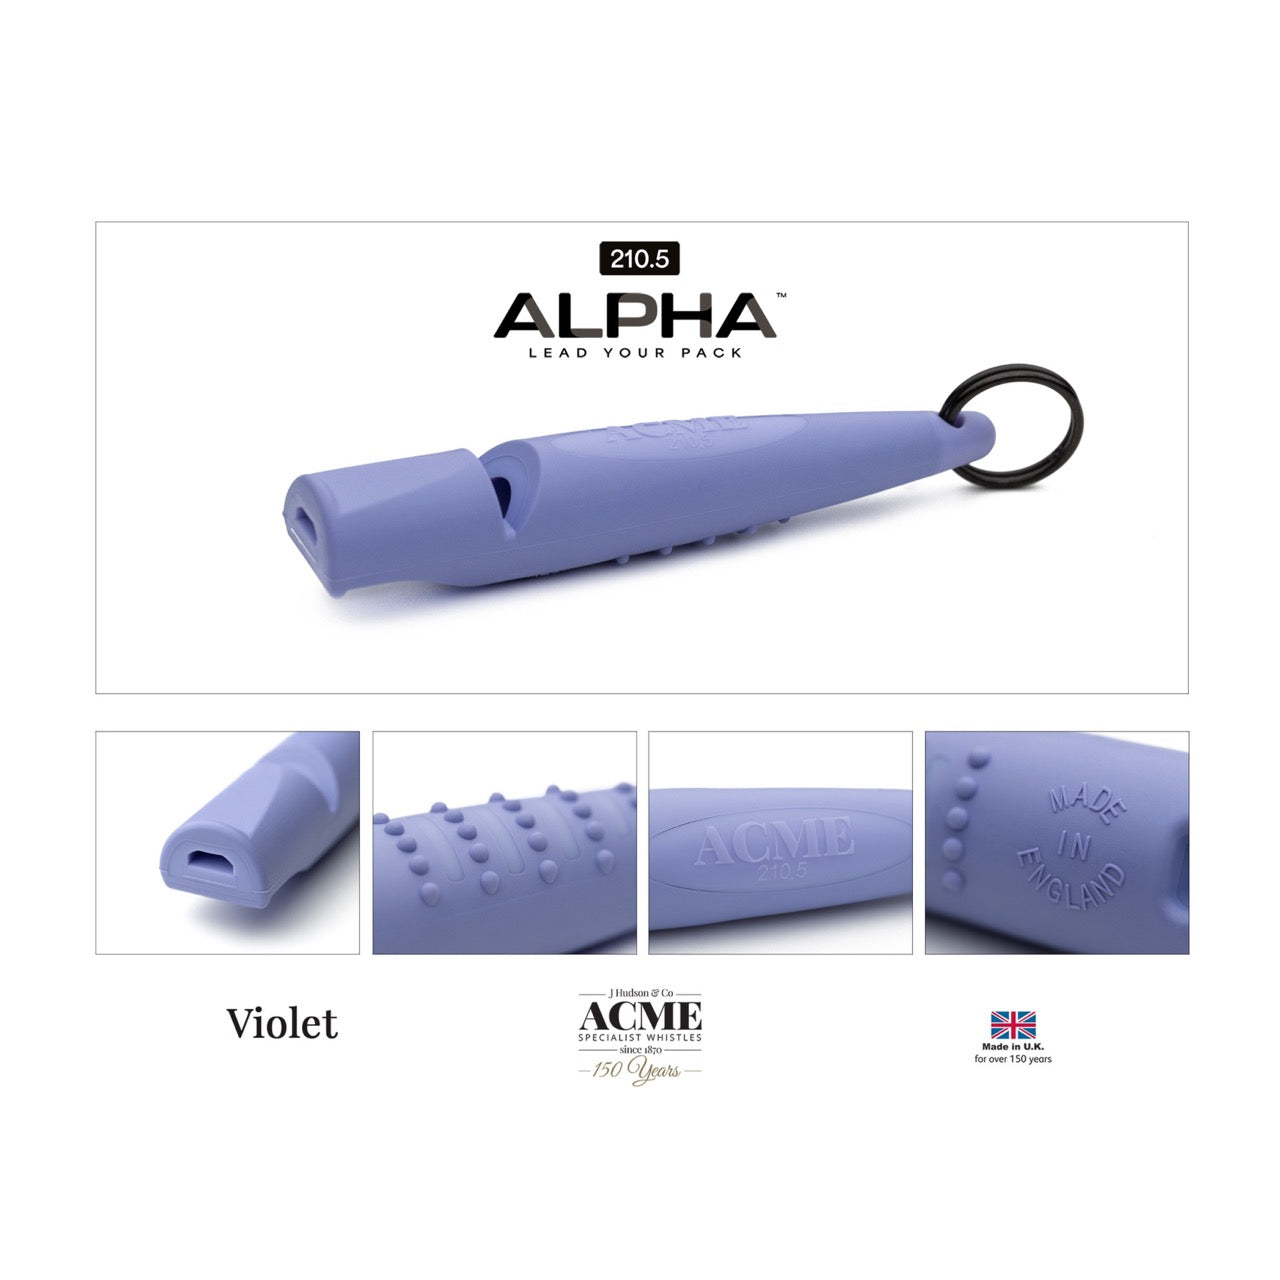 Acme Acme Alpha beste hondenfluit toonhoogte 210.5 violet